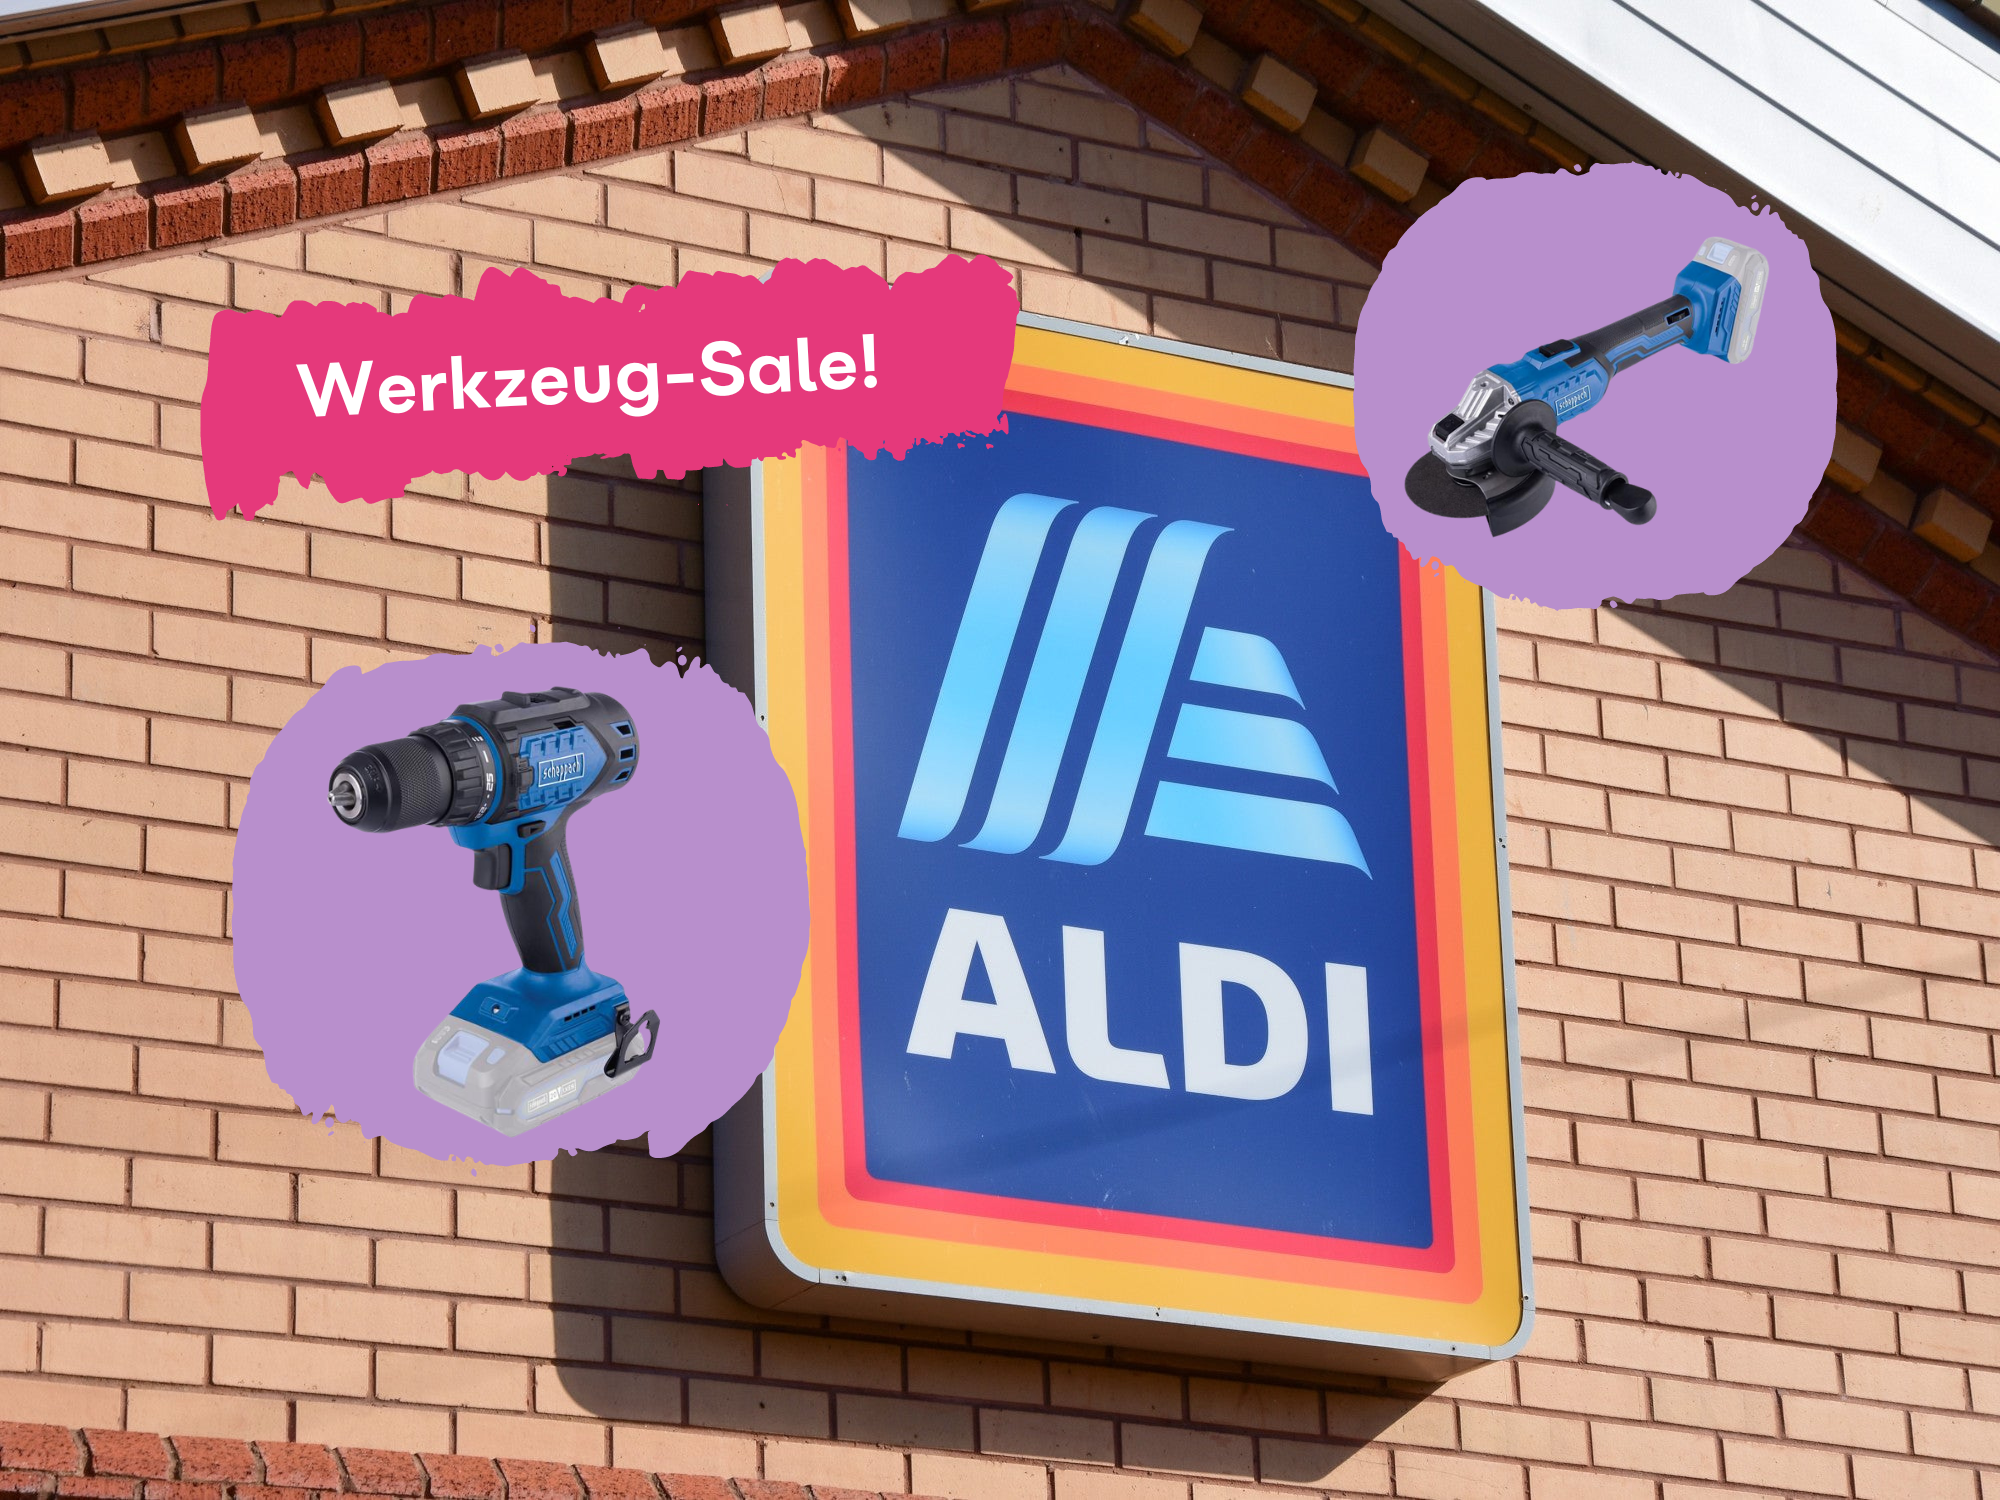 Werkzeug-Sale bei Aldi mit Top-Angeboten